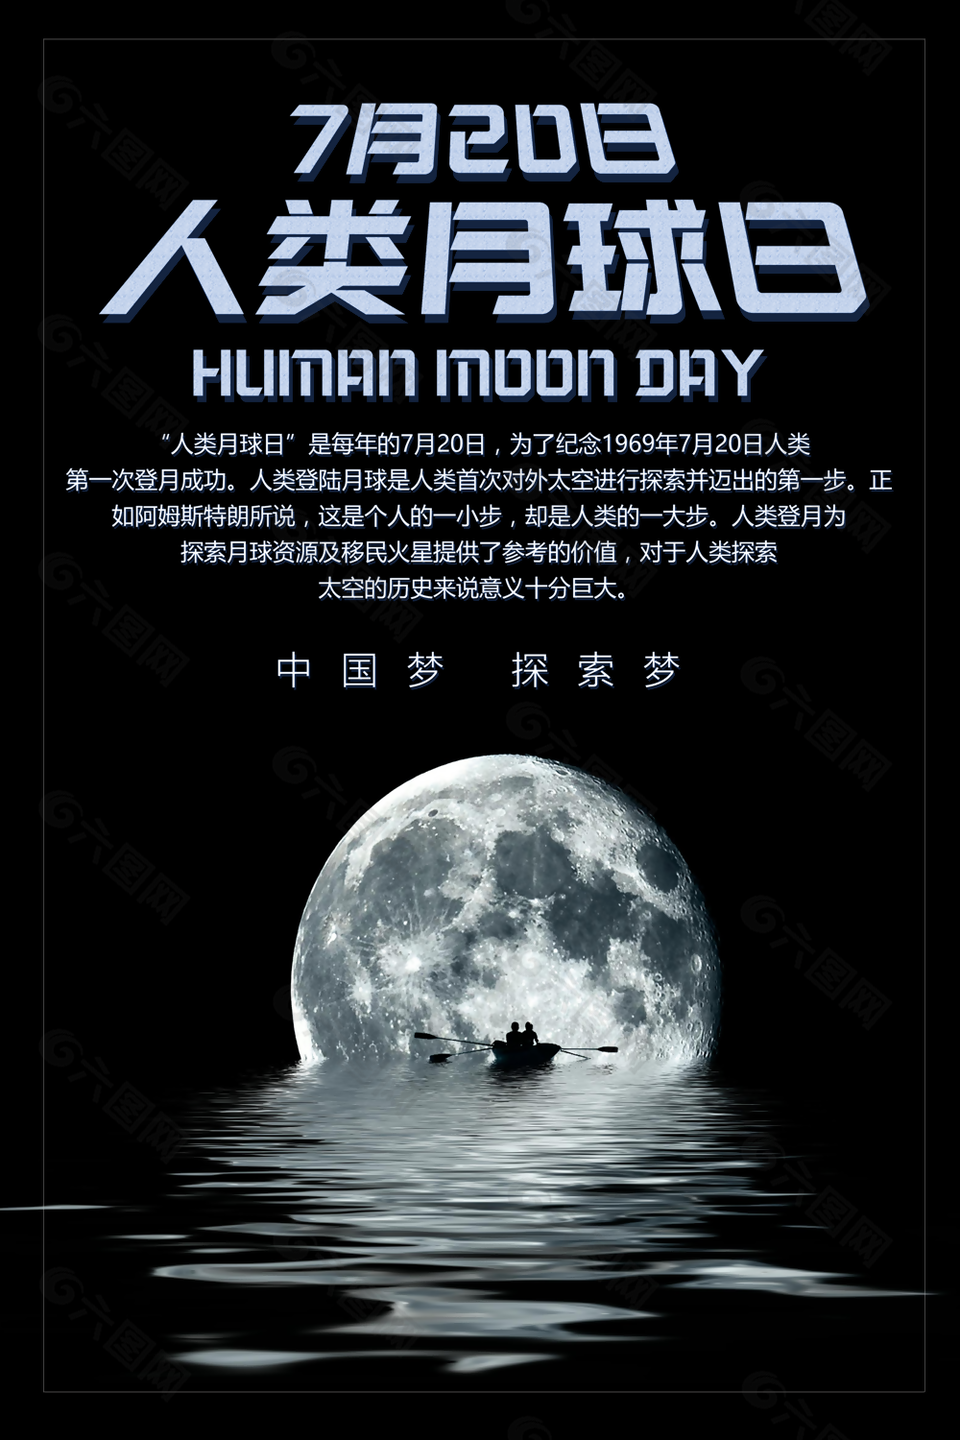 神秘黑色大气人类月球日海报素材设计